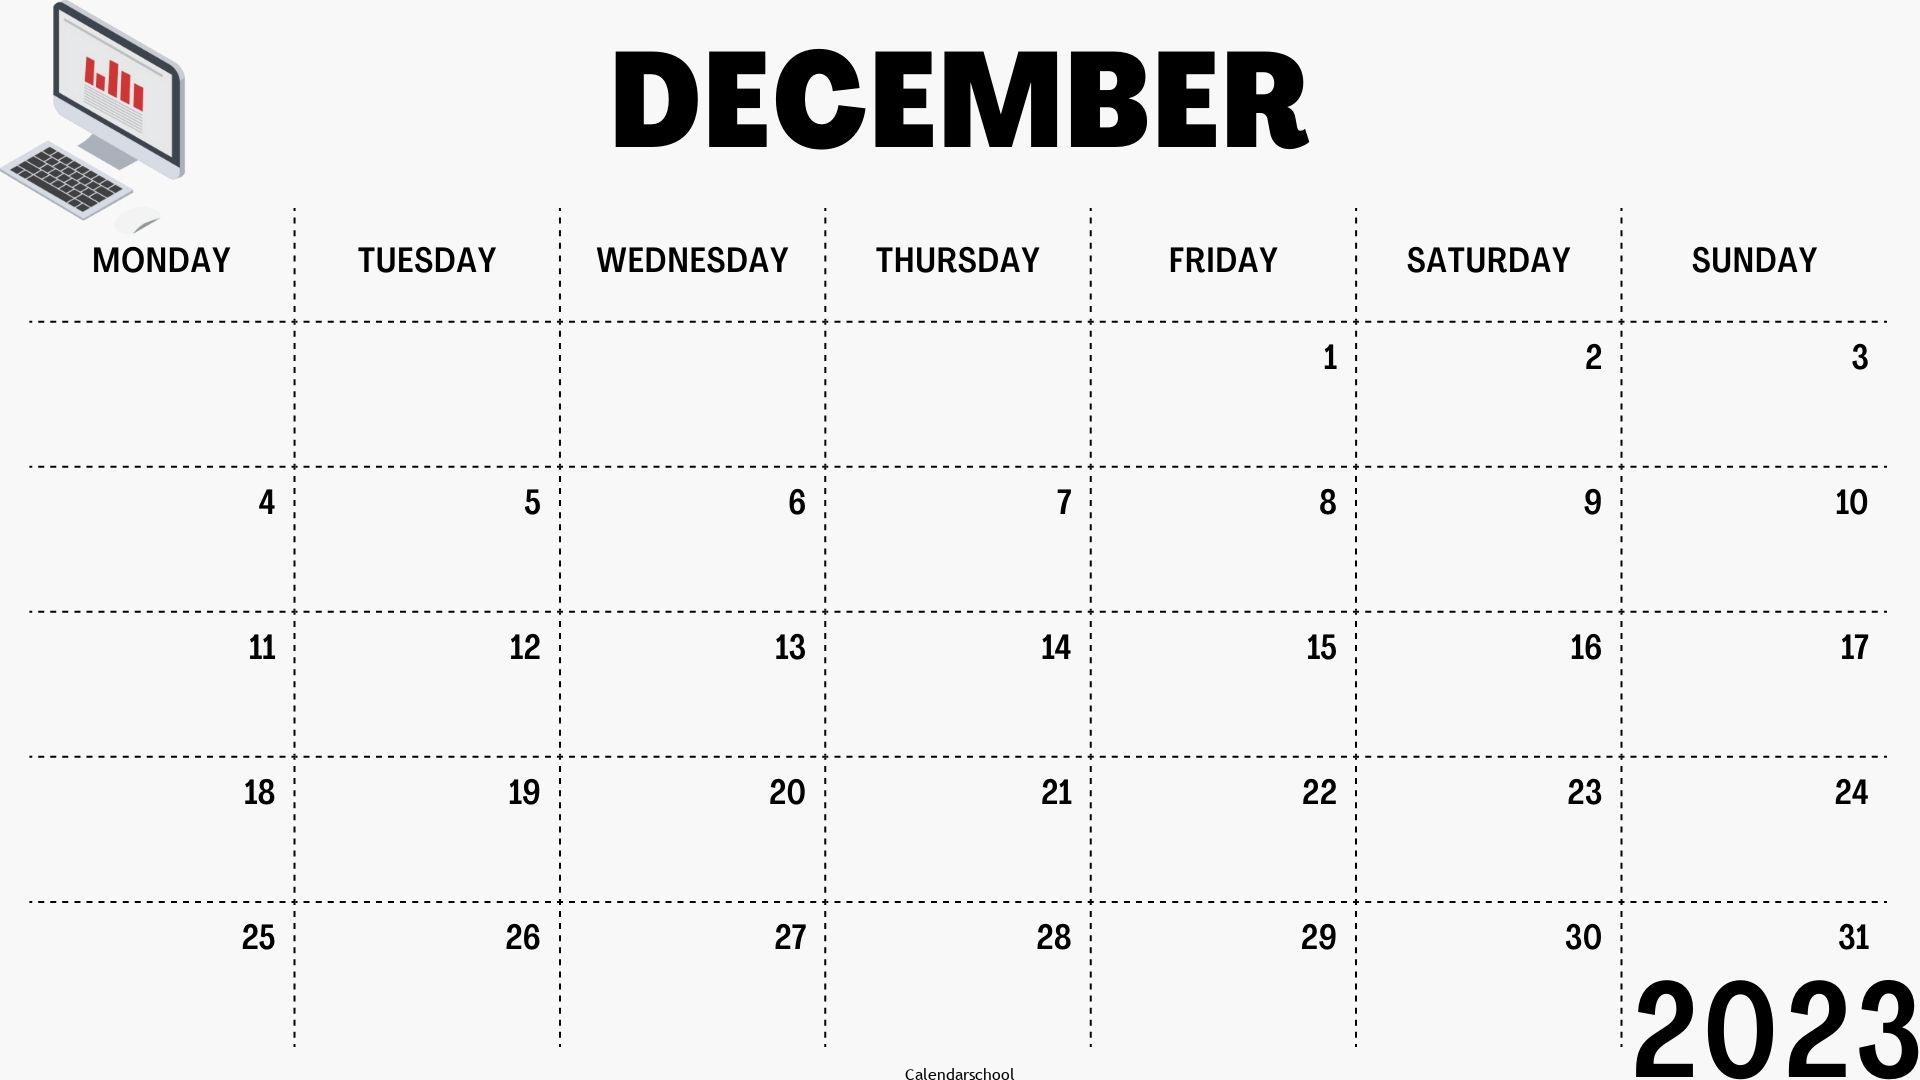 Starfall Calendar December 2023